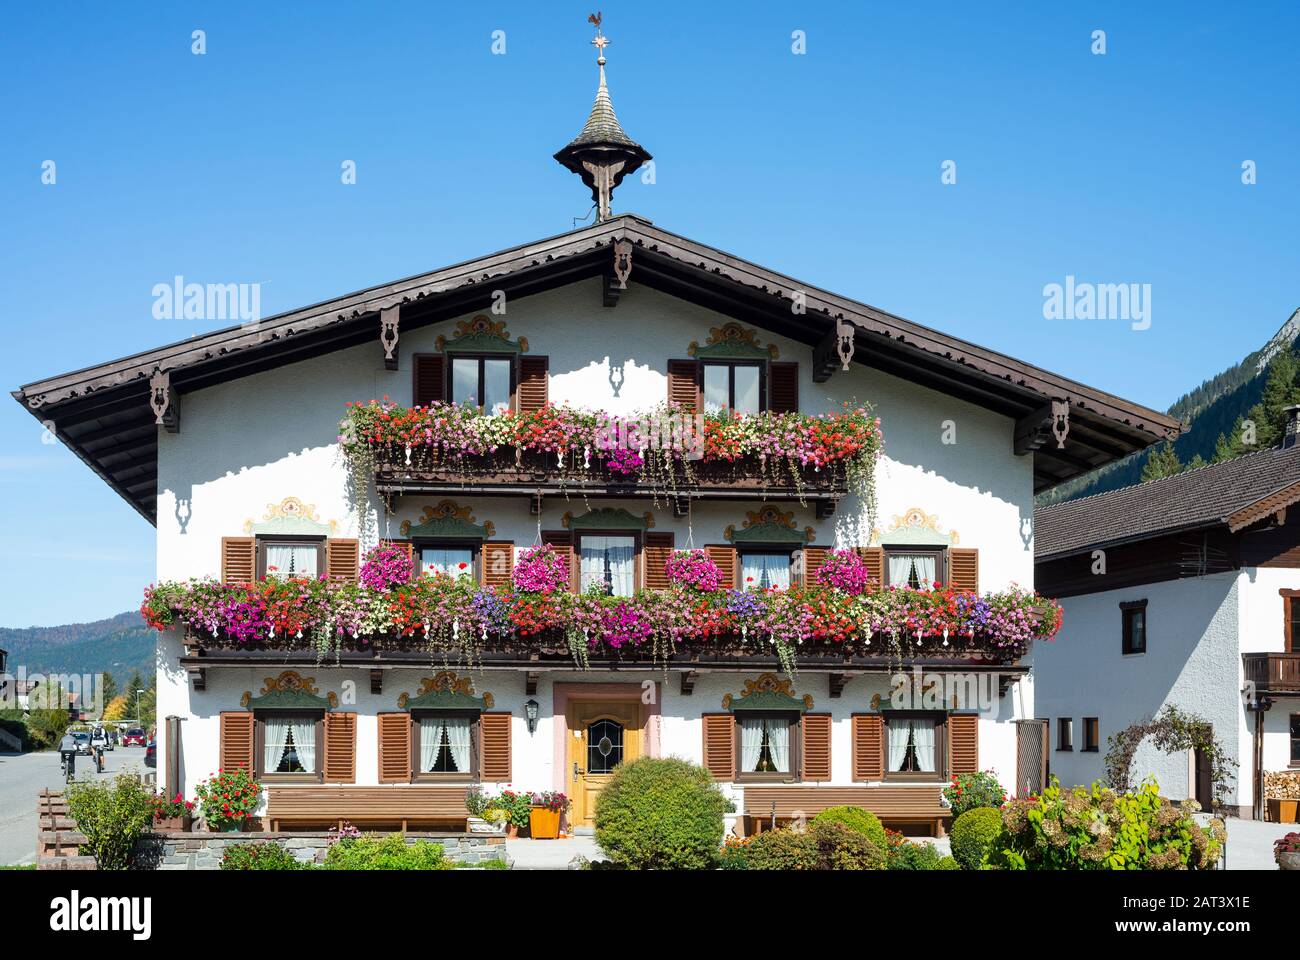 Tradizionale casa colonica tirolese con balconi, persiane e fiori in fiore in scatole a Achenkirch sul Lago Achensee, Tirolo, Austria Foto Stock